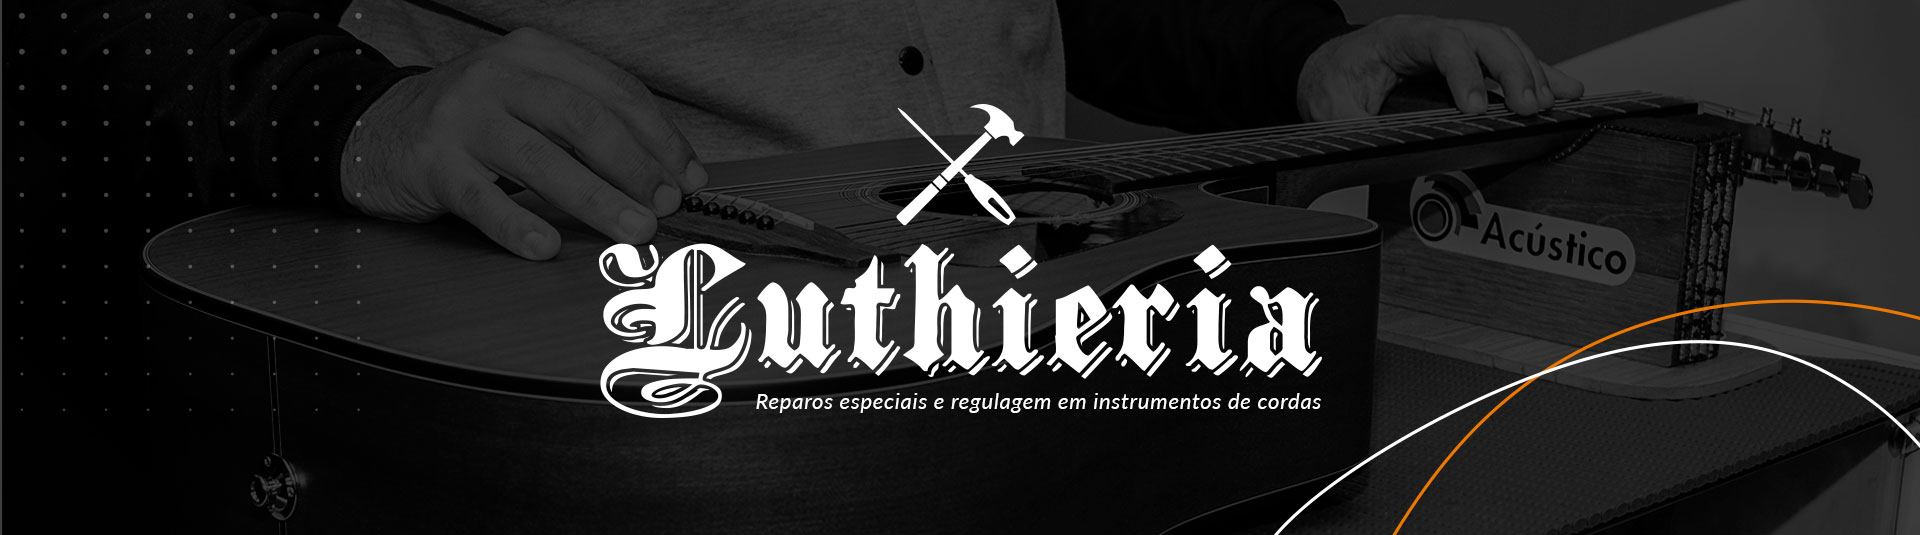 Luthieria Reparos